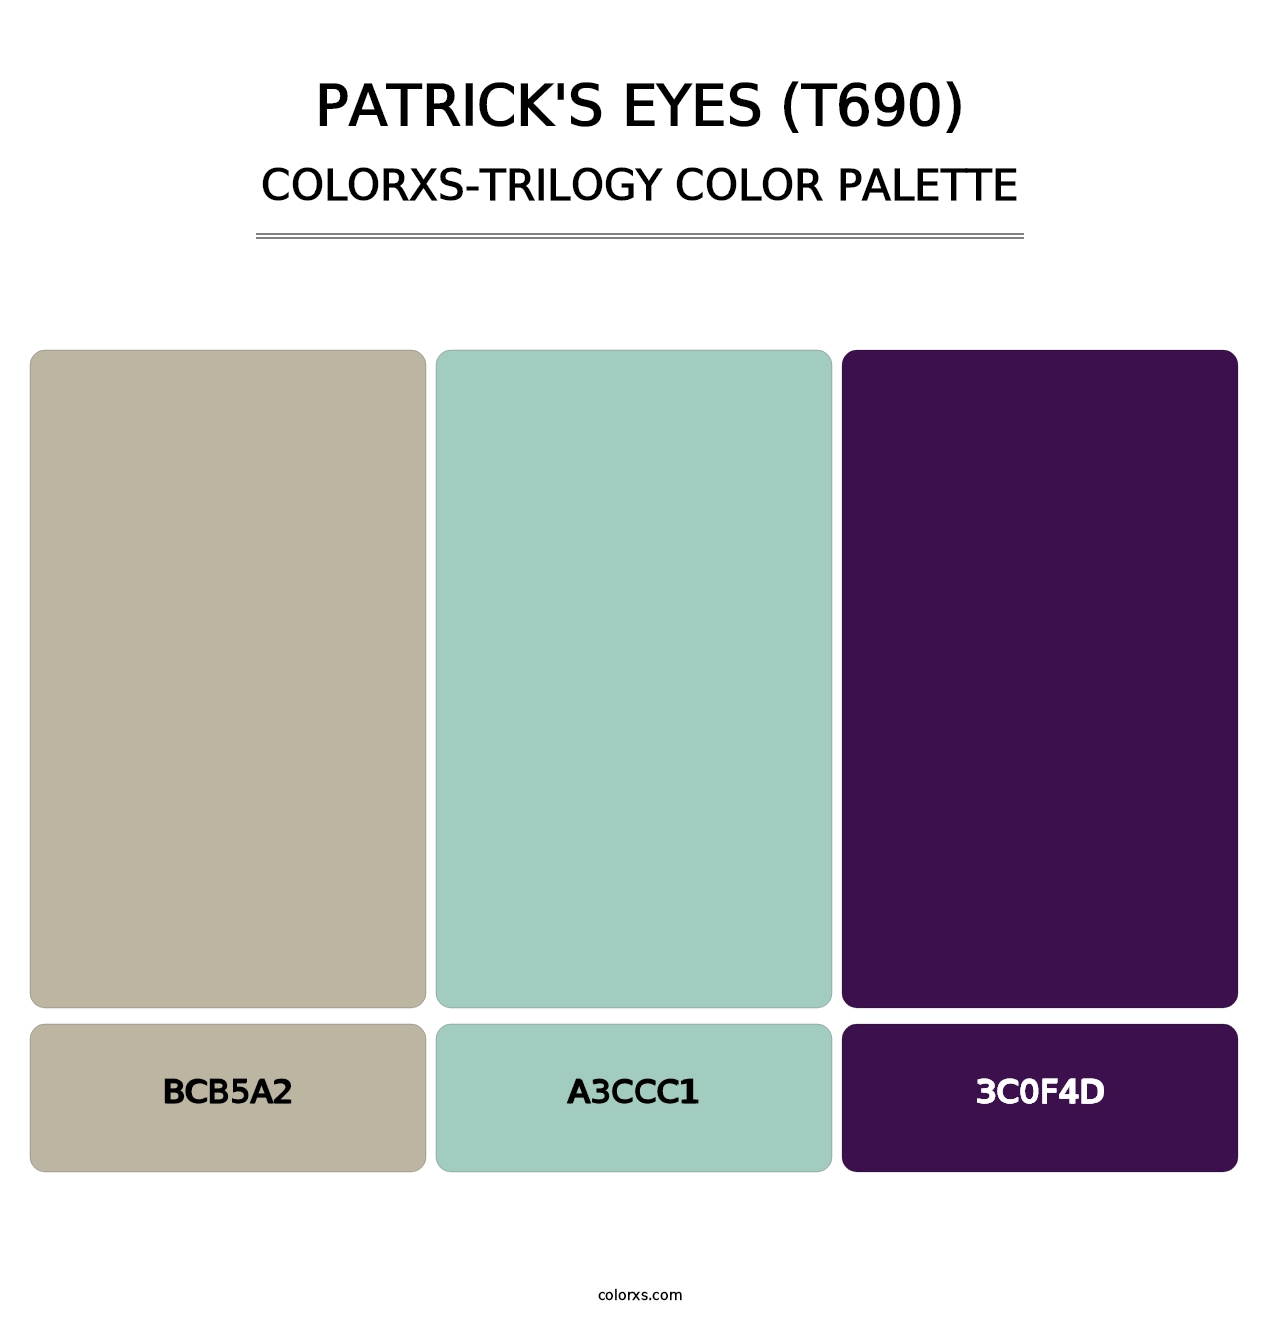 Patrick's Eyes (T690) - Colorxs Trilogy Palette